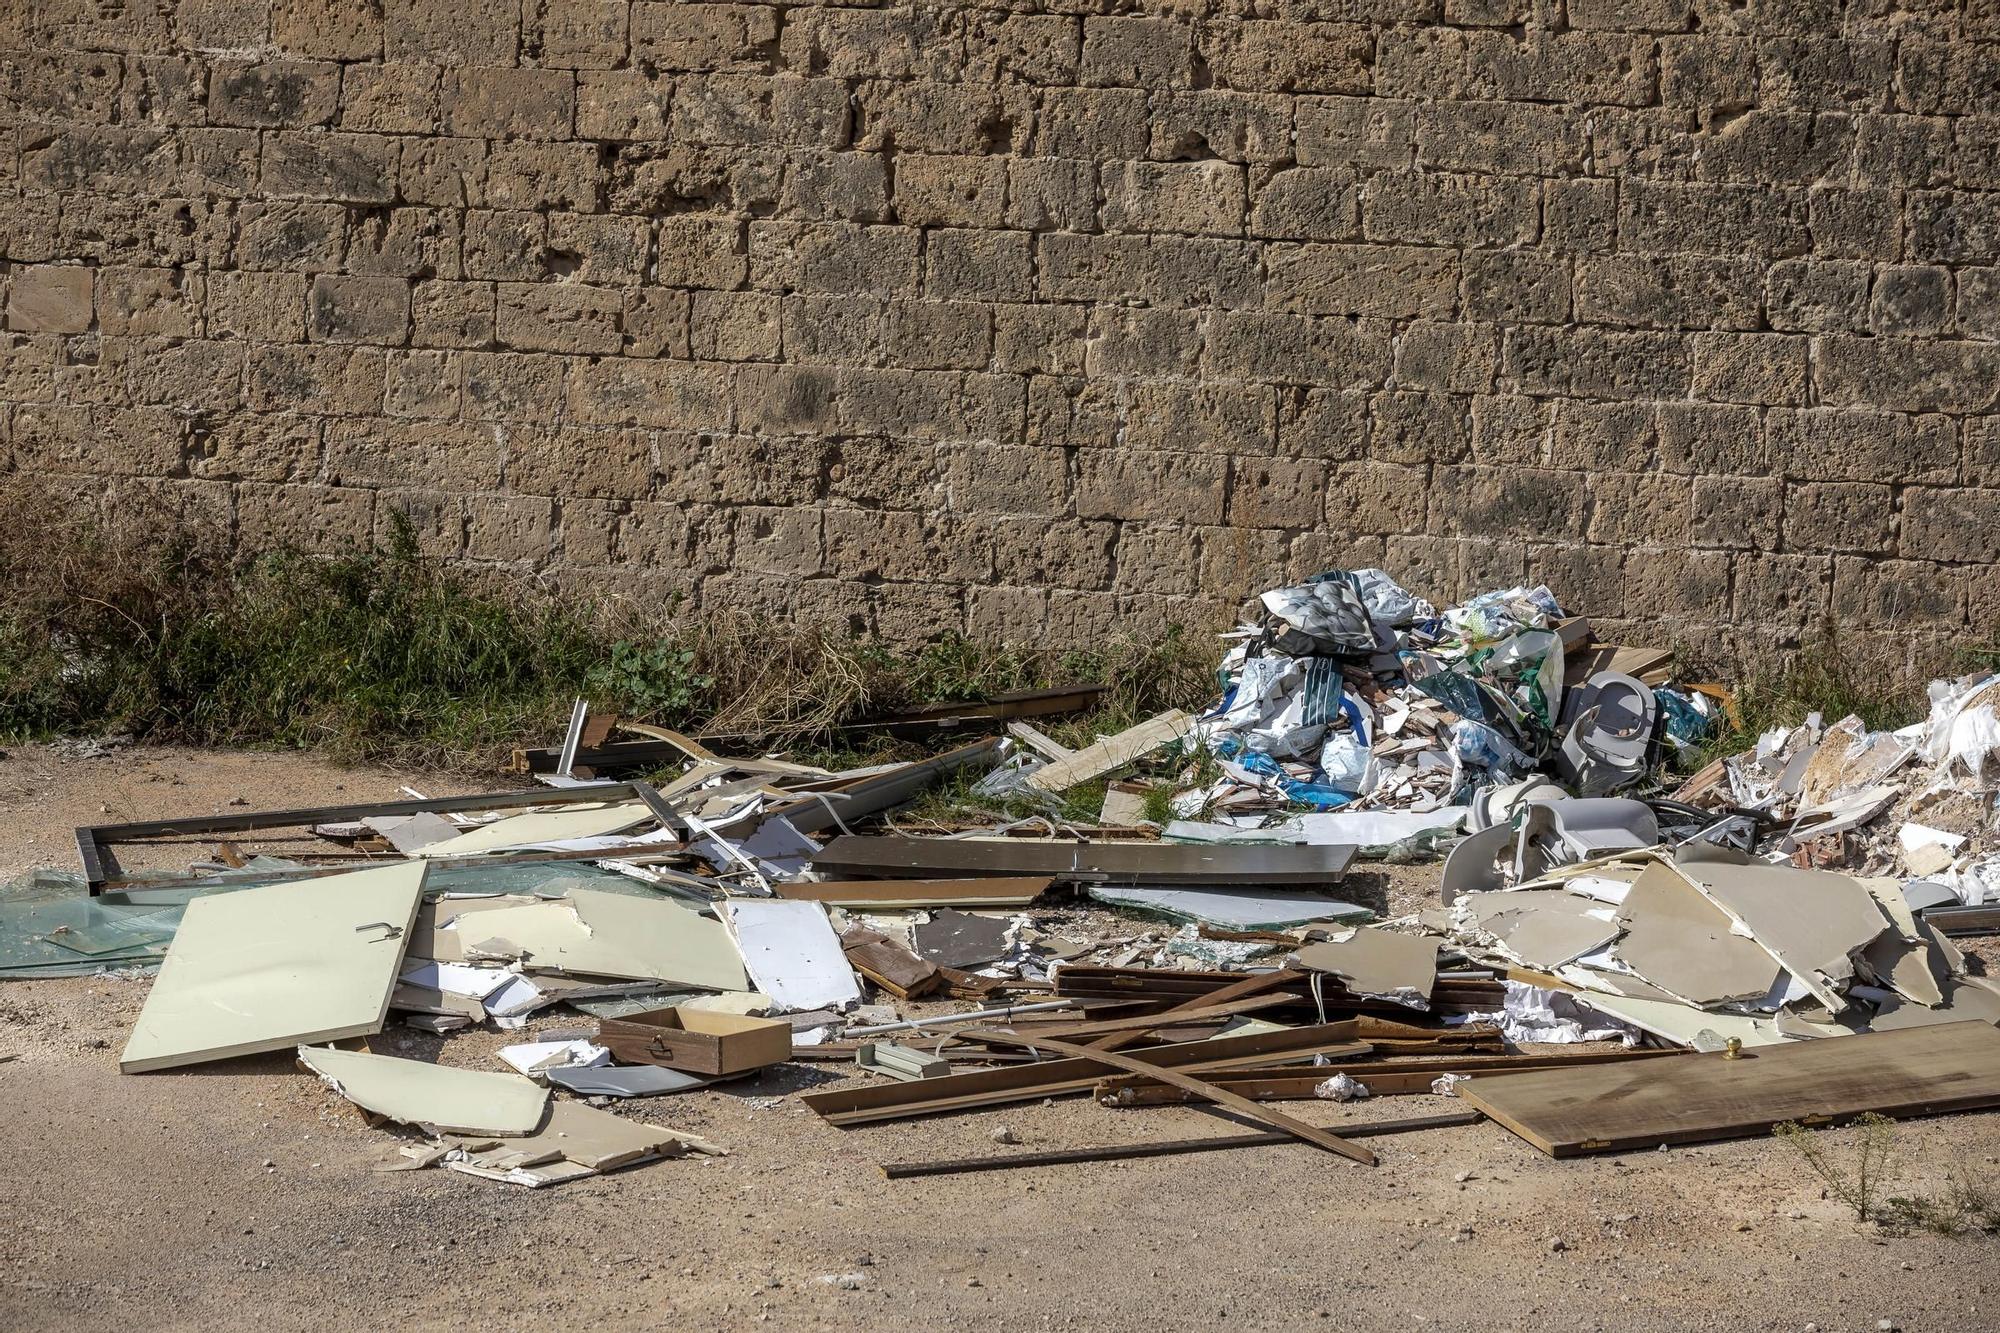 Un vertedero en el Baluard del Príncep: escombros, trastos y basura se adueñan de la antigua fortaleza de Palma